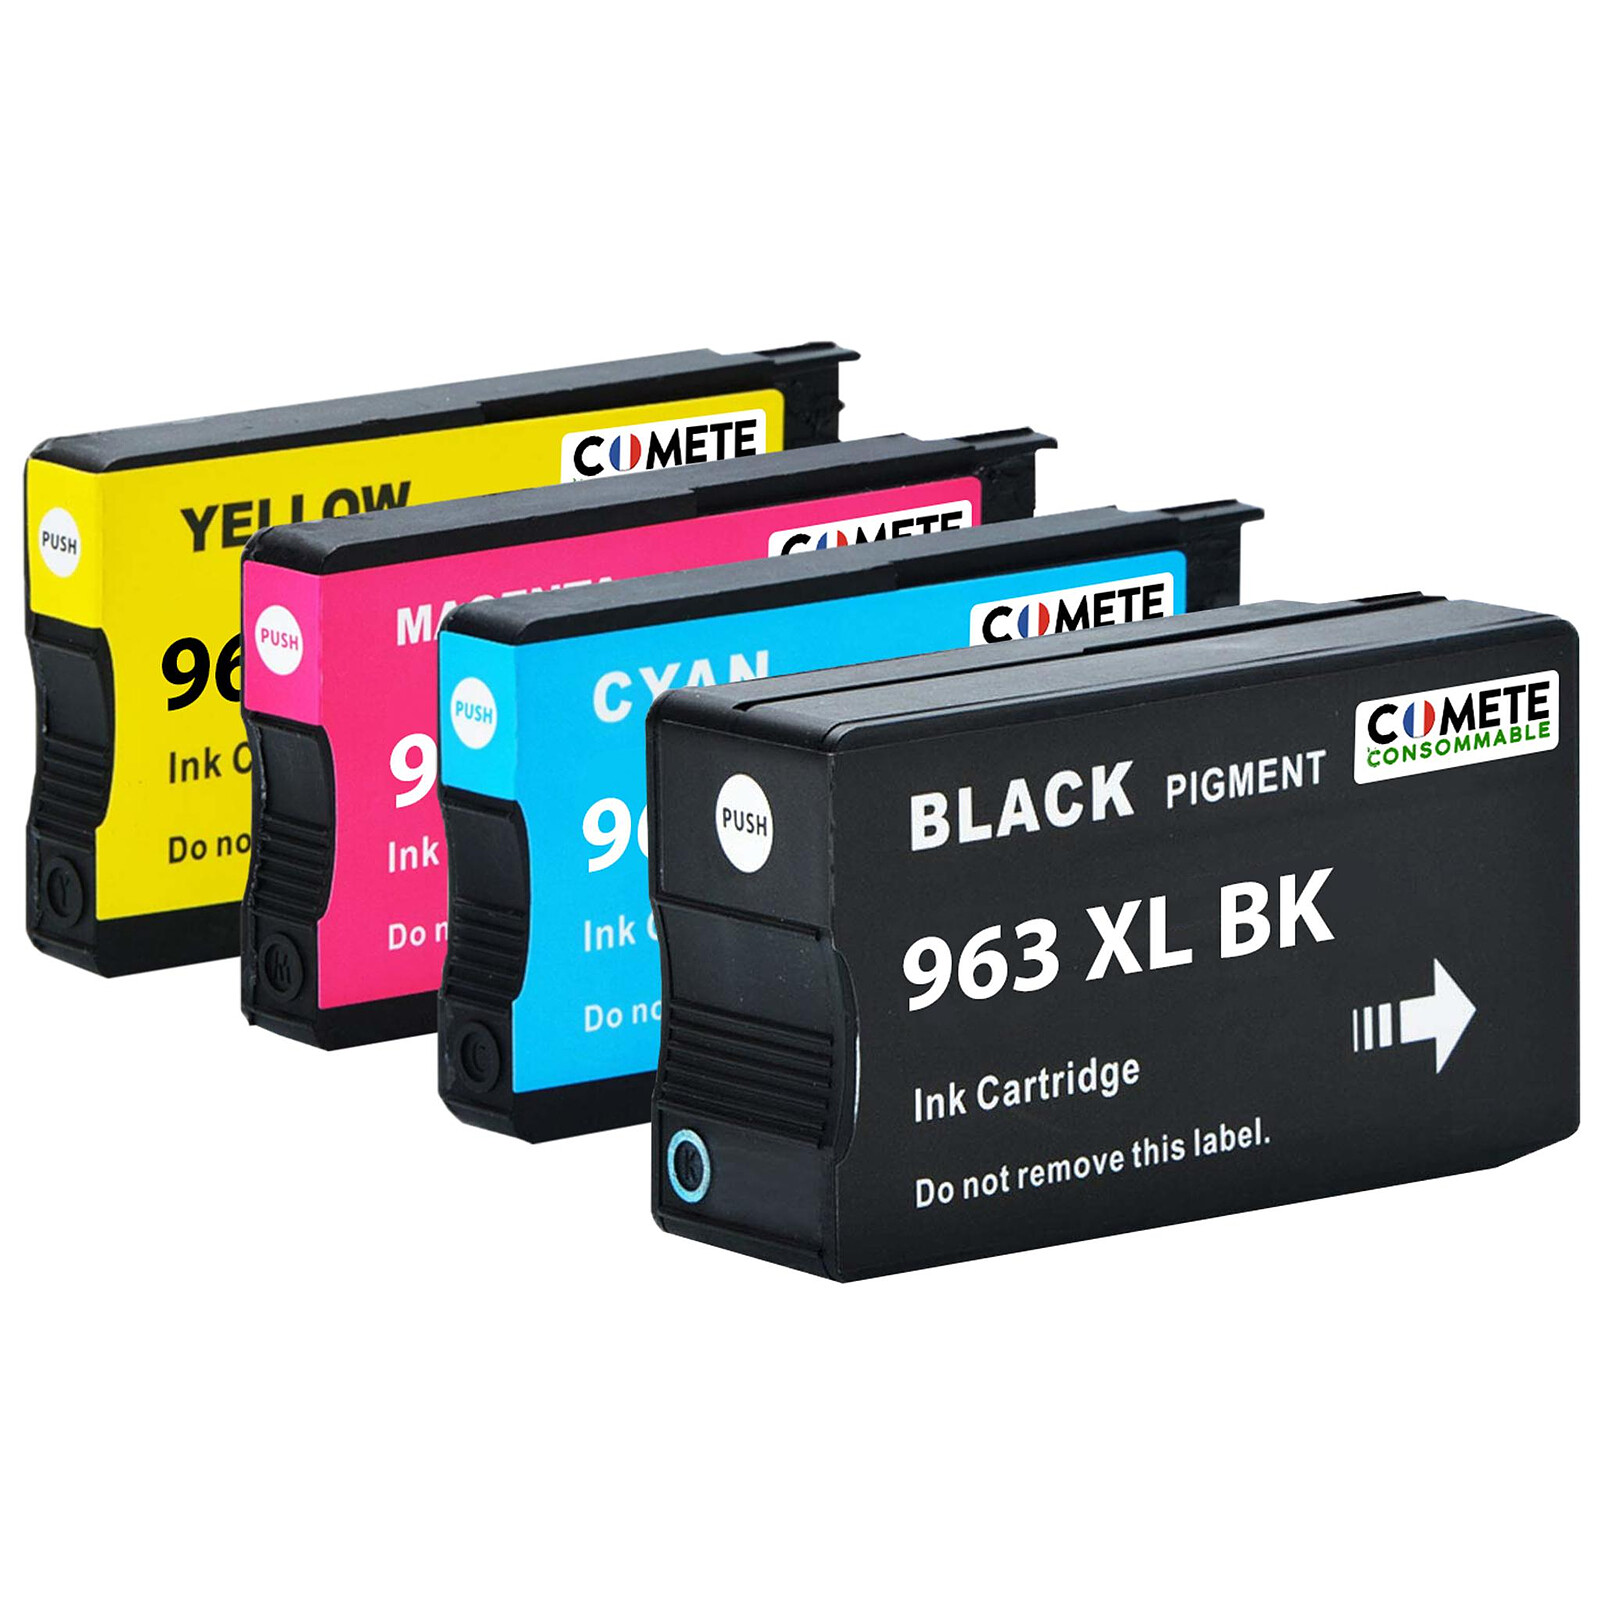 Cartouche compatible HP 953XL - pack de 4 - noir, cyan, magenta, jaune -  Uprint